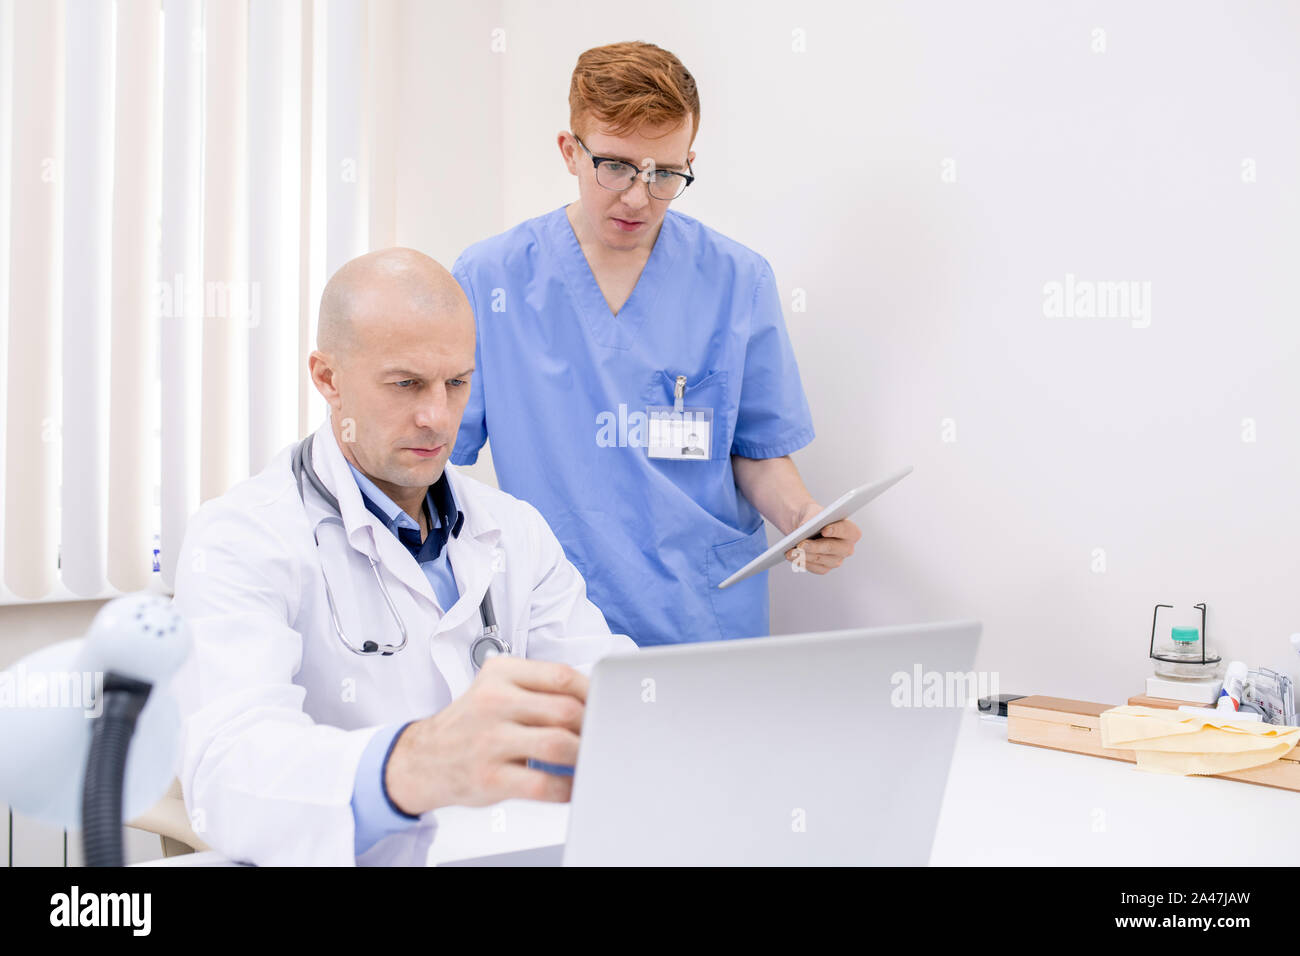 Confiant mature doctor pointing at laptop Présentation affichage Banque D'Images